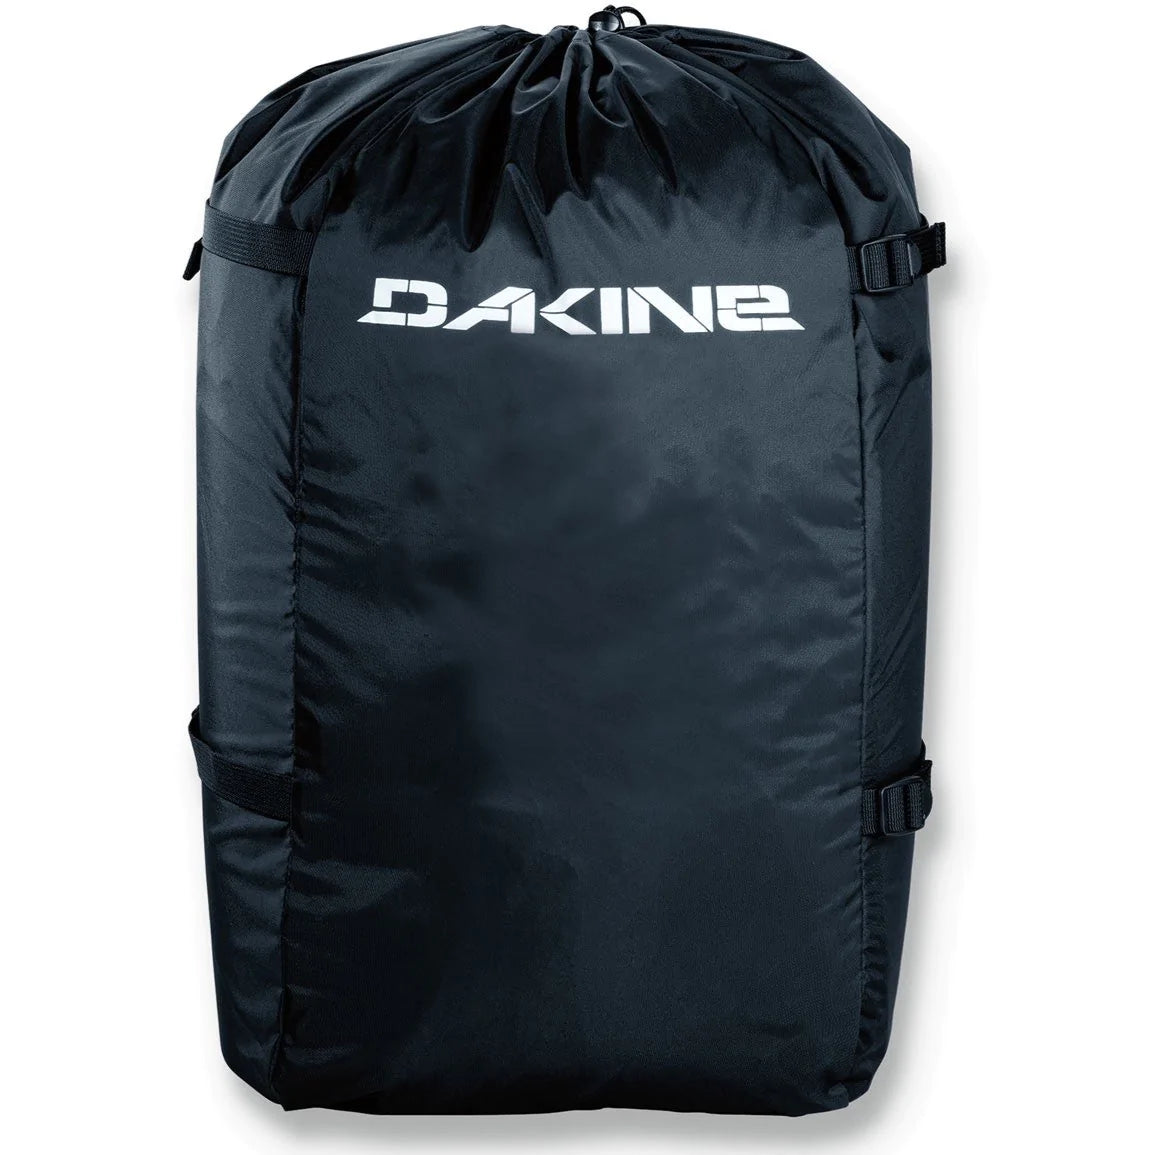 Dakine Kite Compression Bag Stuff Sack